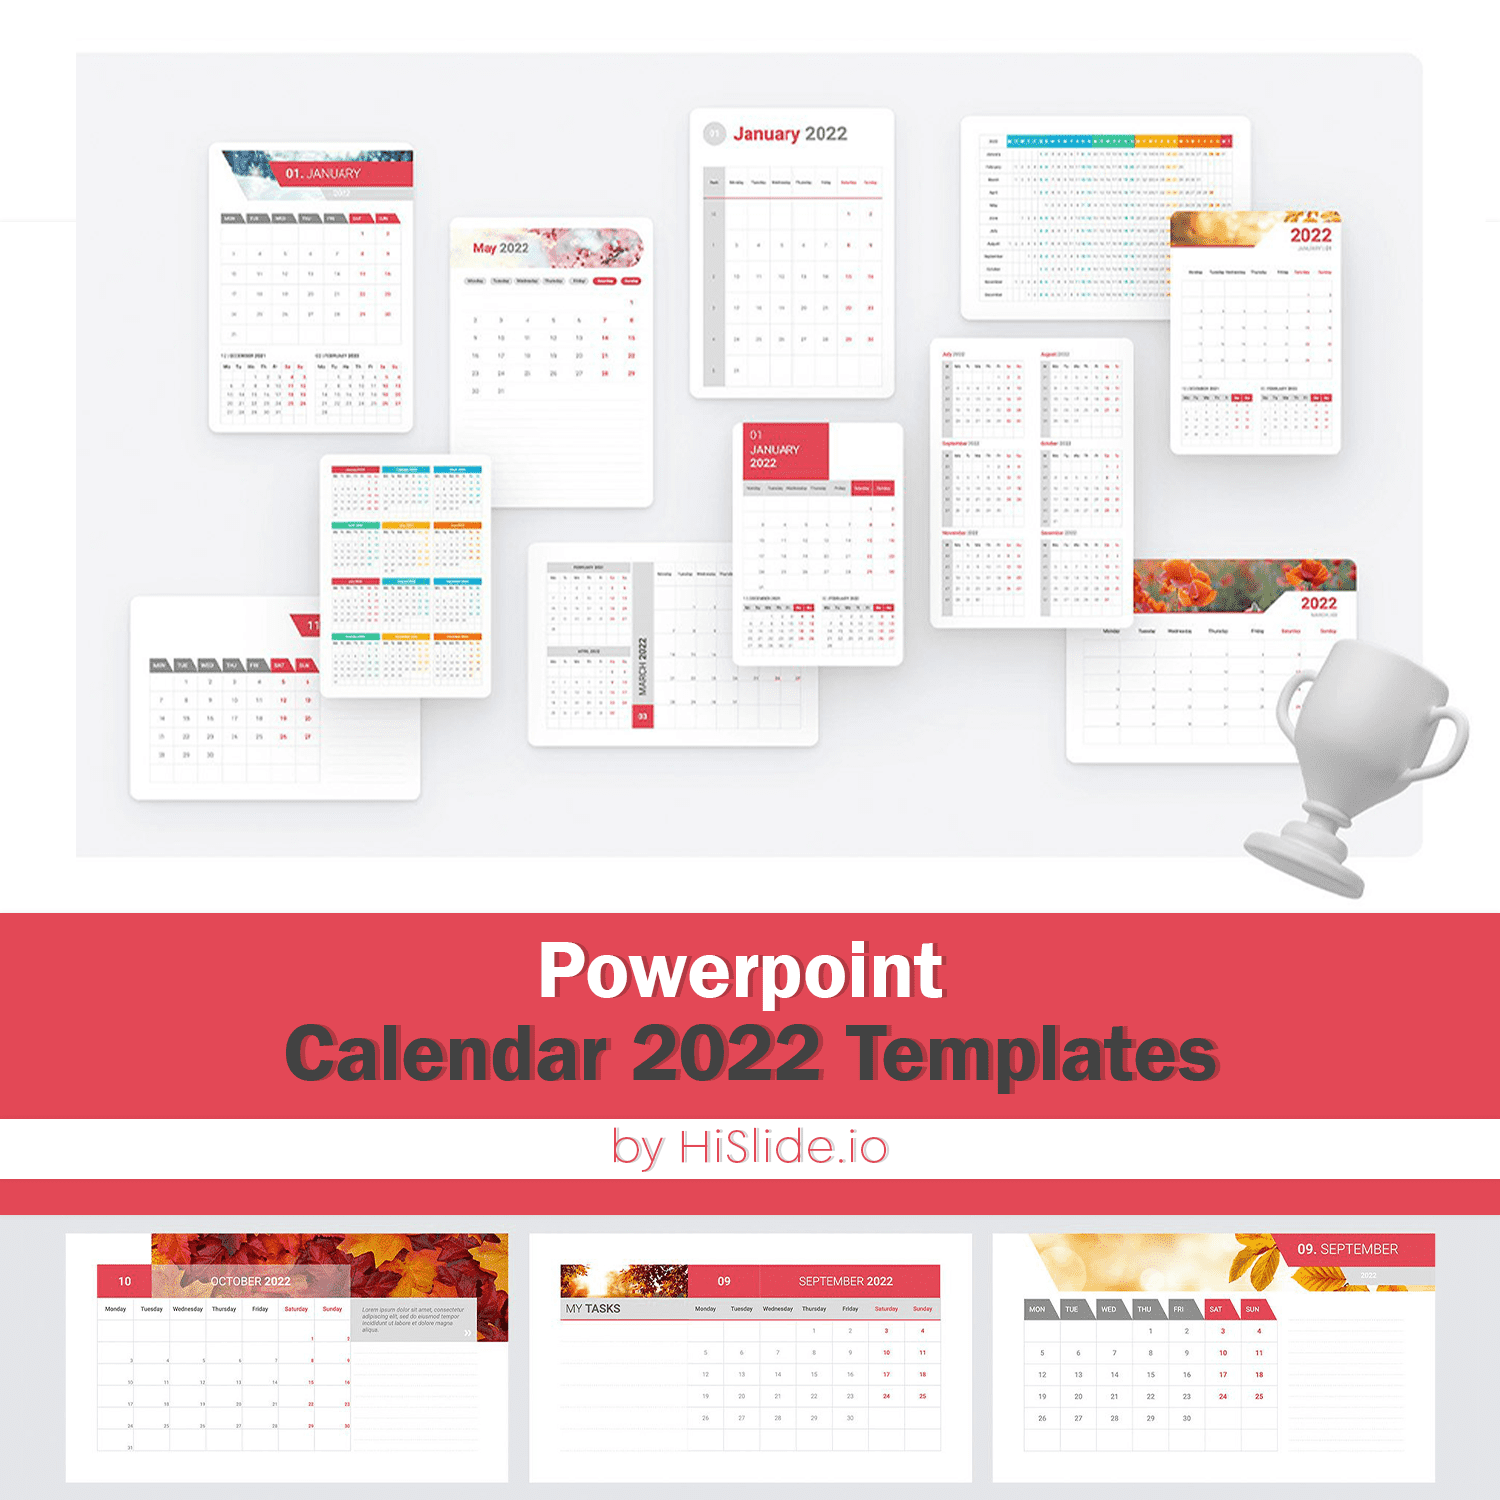 powerpoint calendar 2022 templates.